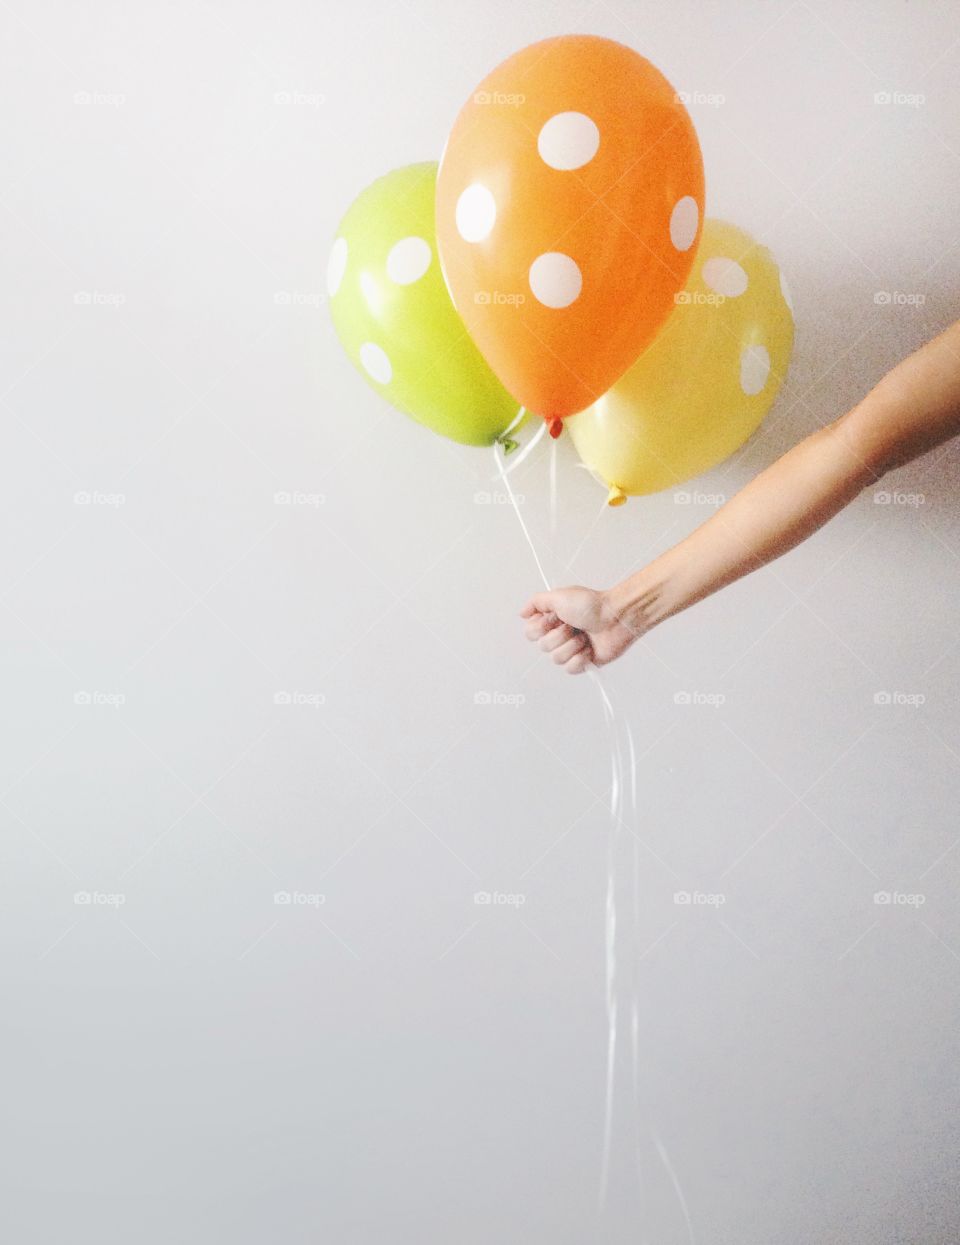 A person holding a balloon